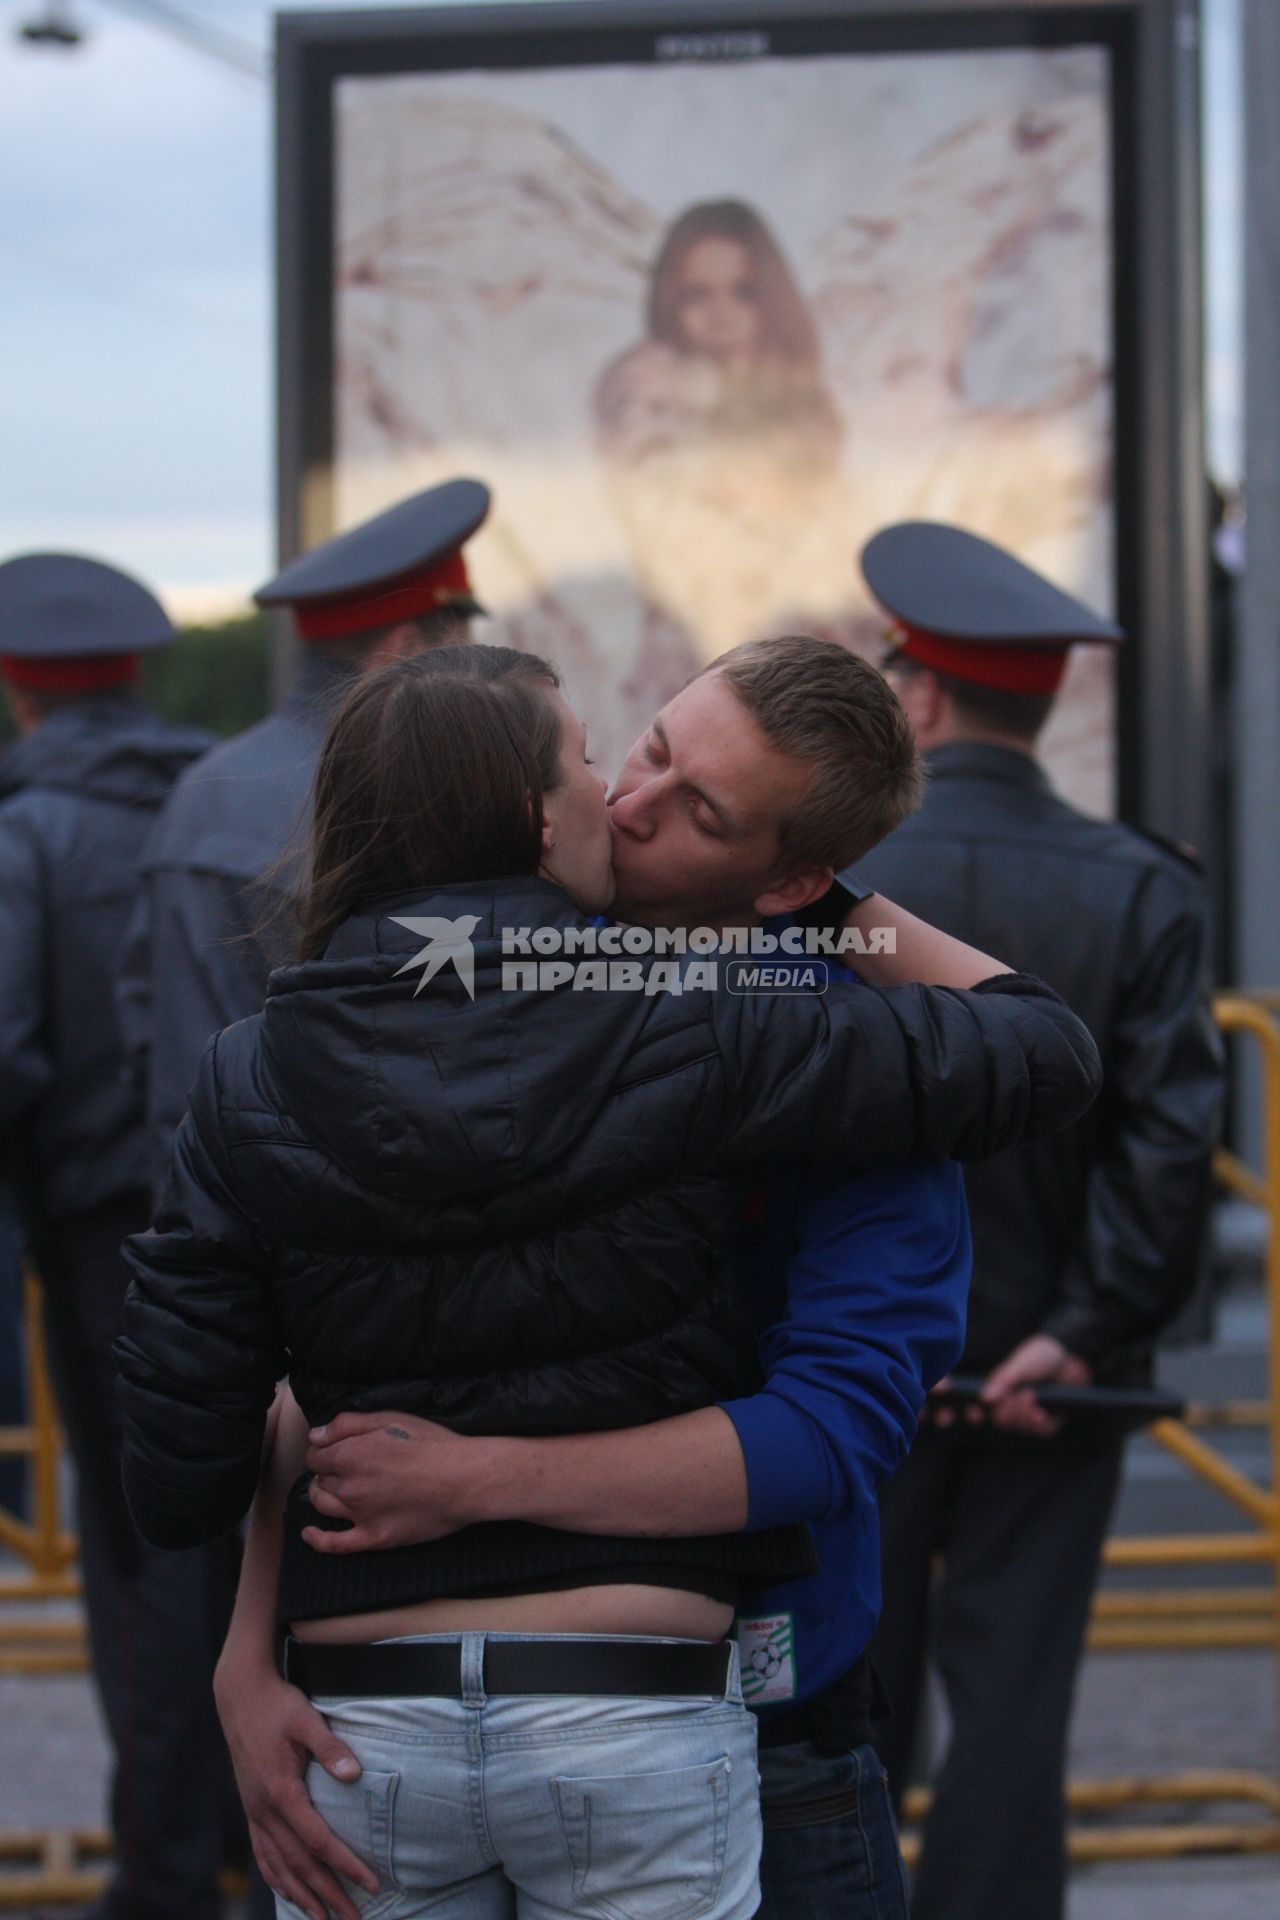 Мужчина и женщина целуются на улице. На заднем плане стоят представители охраны правопорядка (полицейские).